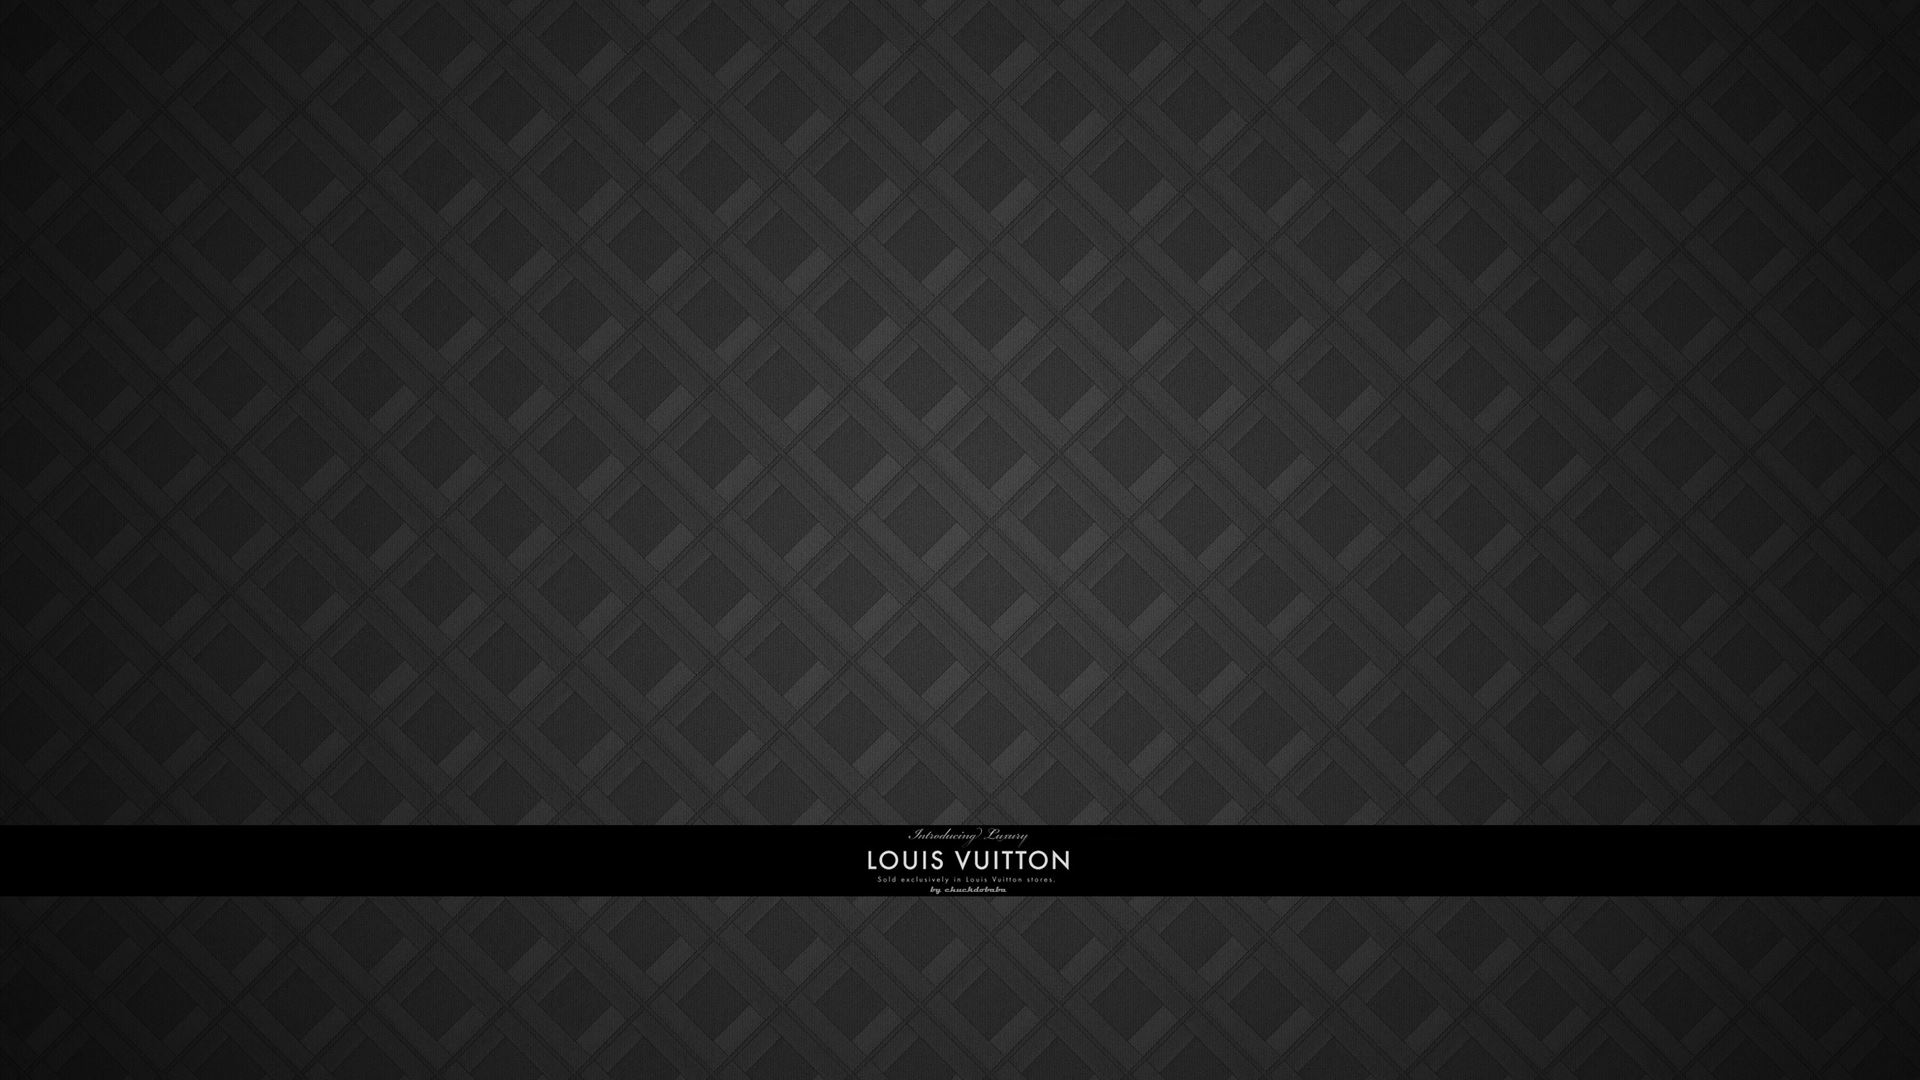 Louis Vuitton BW Mac Wallpaper Download